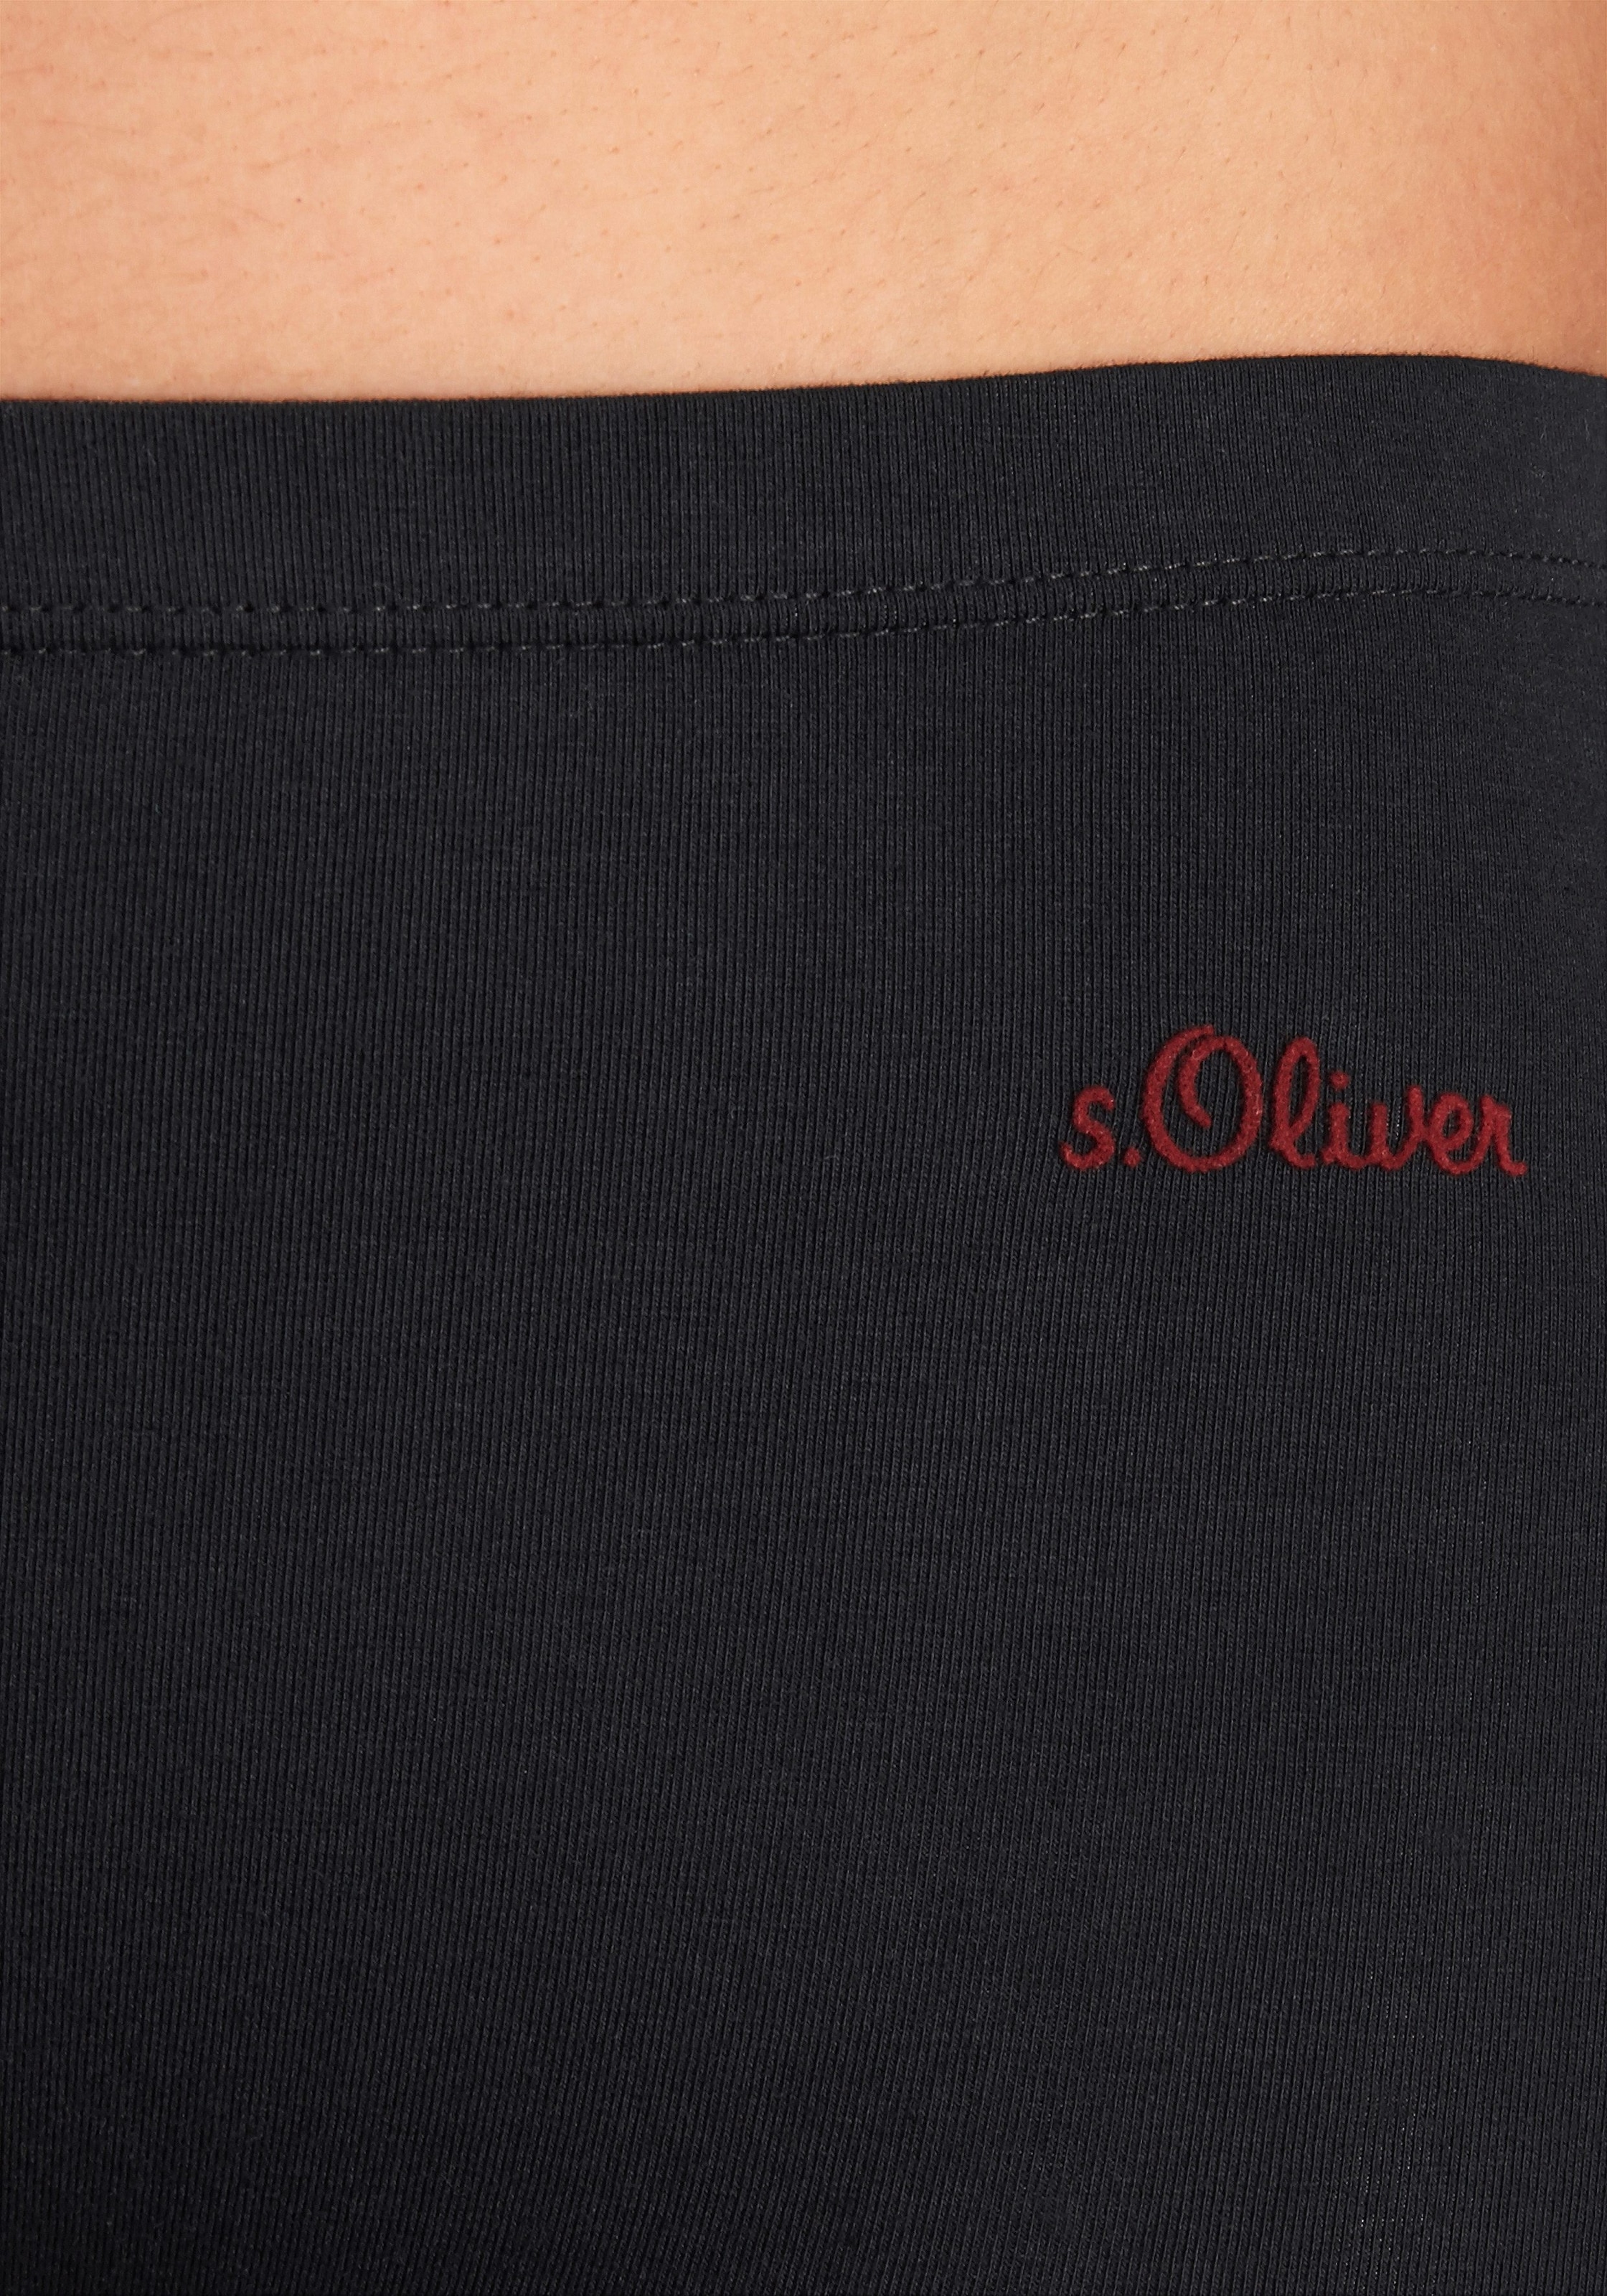 & bestellen Rechnung auf Panty, 3 elastischer s.Oliver (Packung, St.), Baumwoll-Qualität Wäsche aus